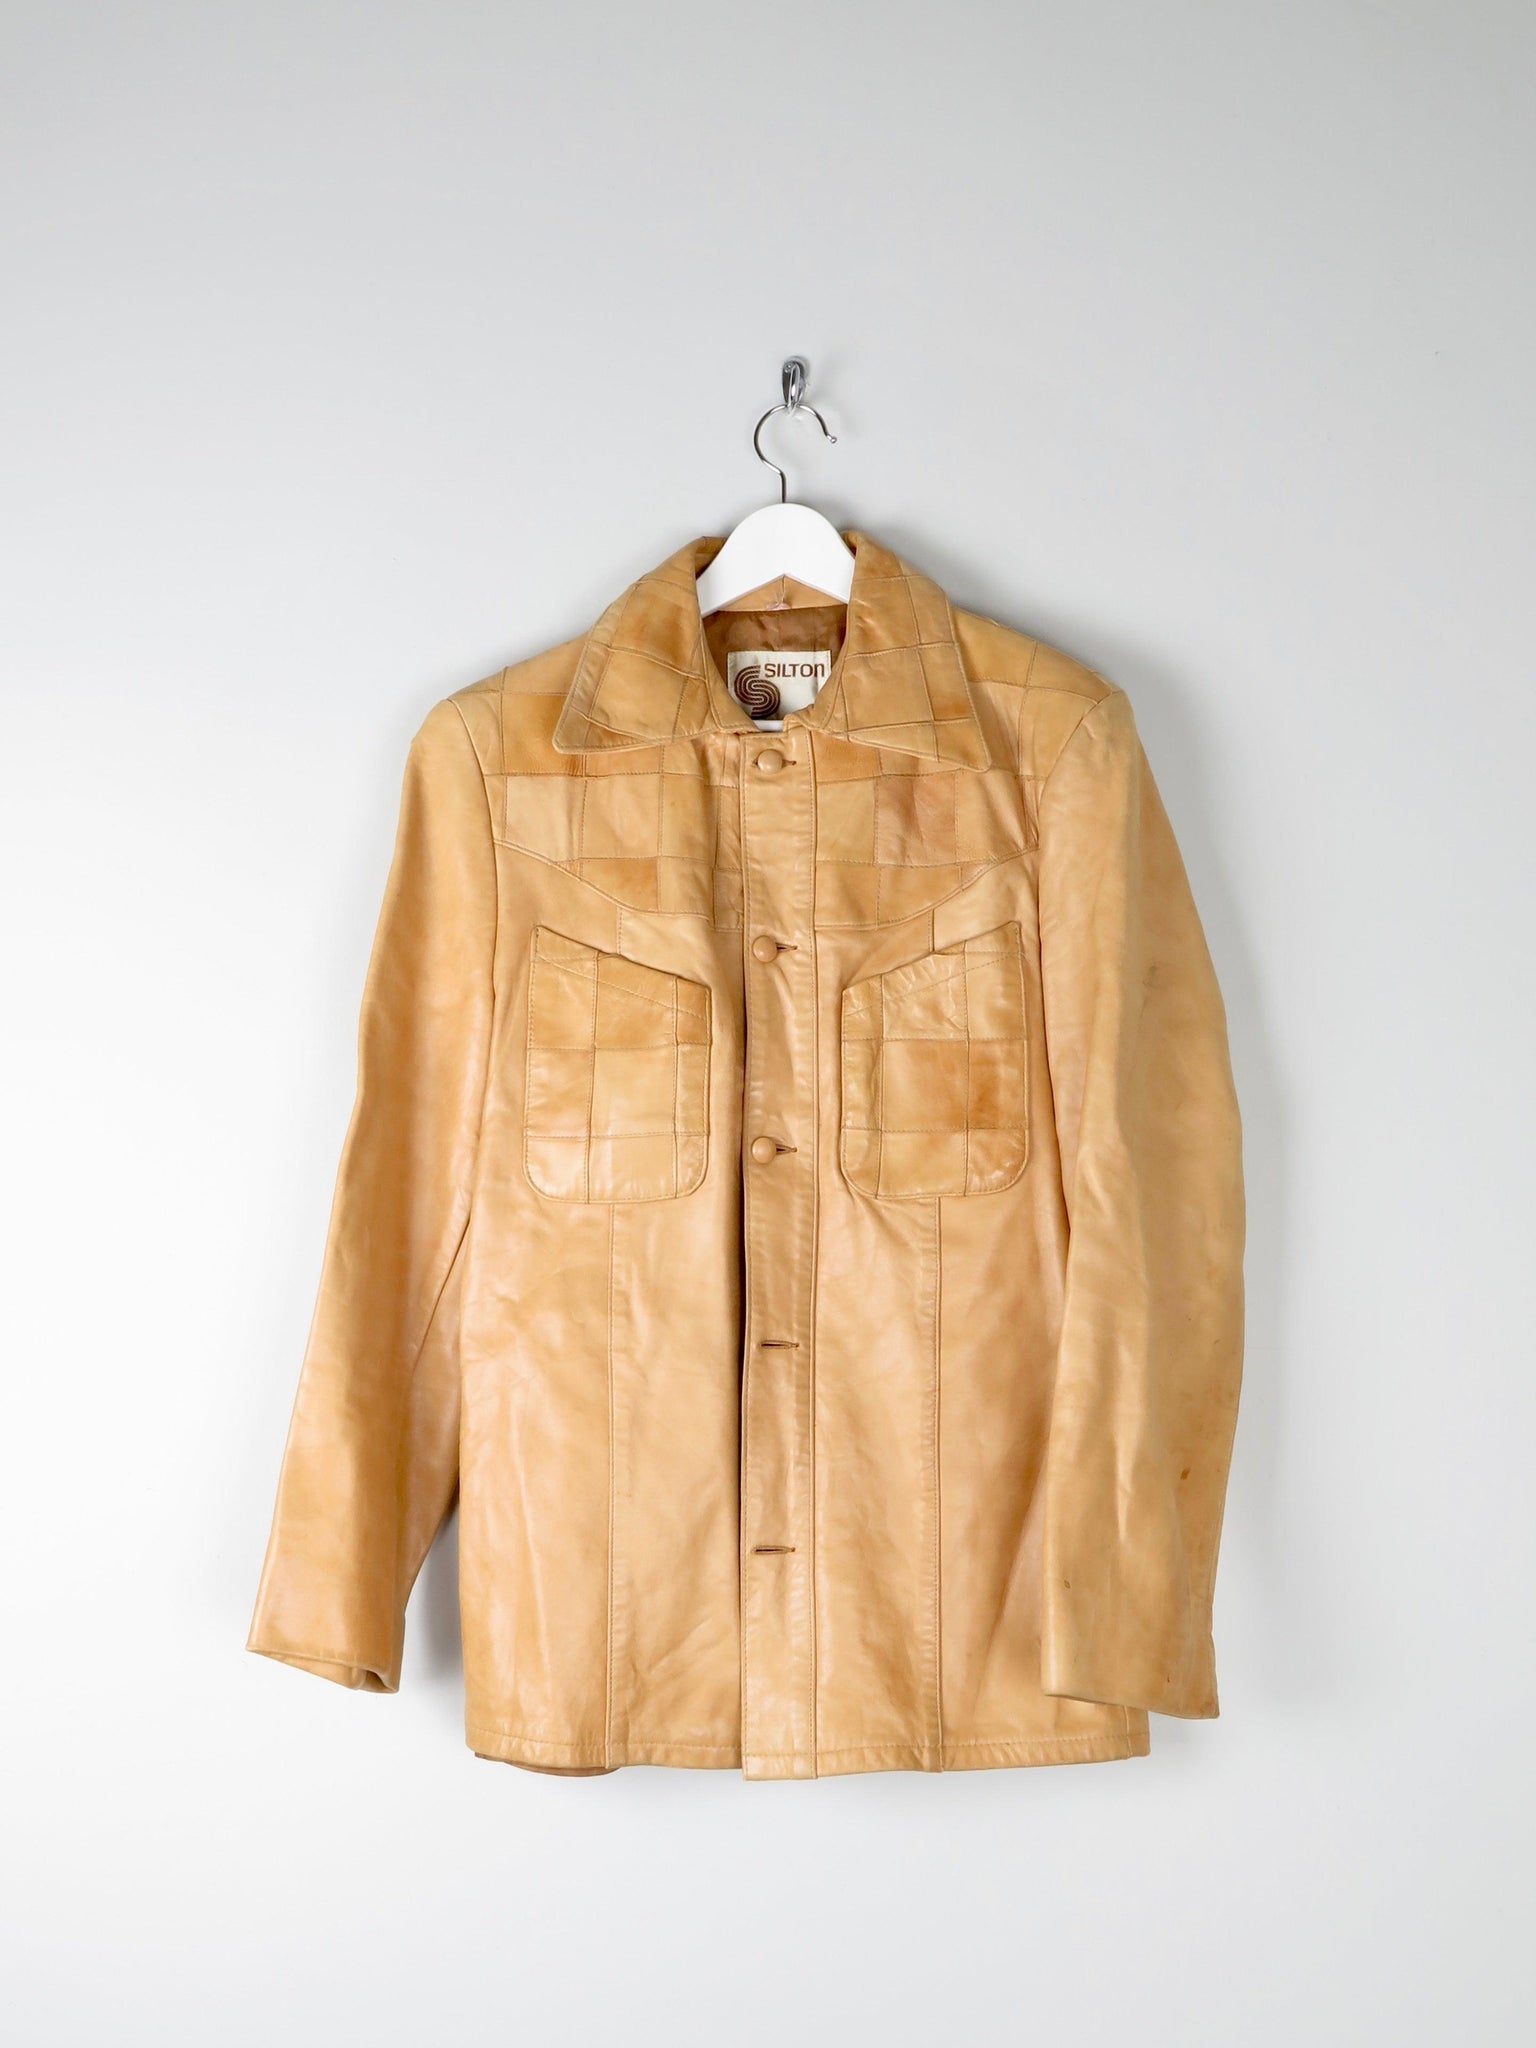 Men's 1970s Vintage  Soft Tan Leather Jacket 40" S/M - The Harlequin